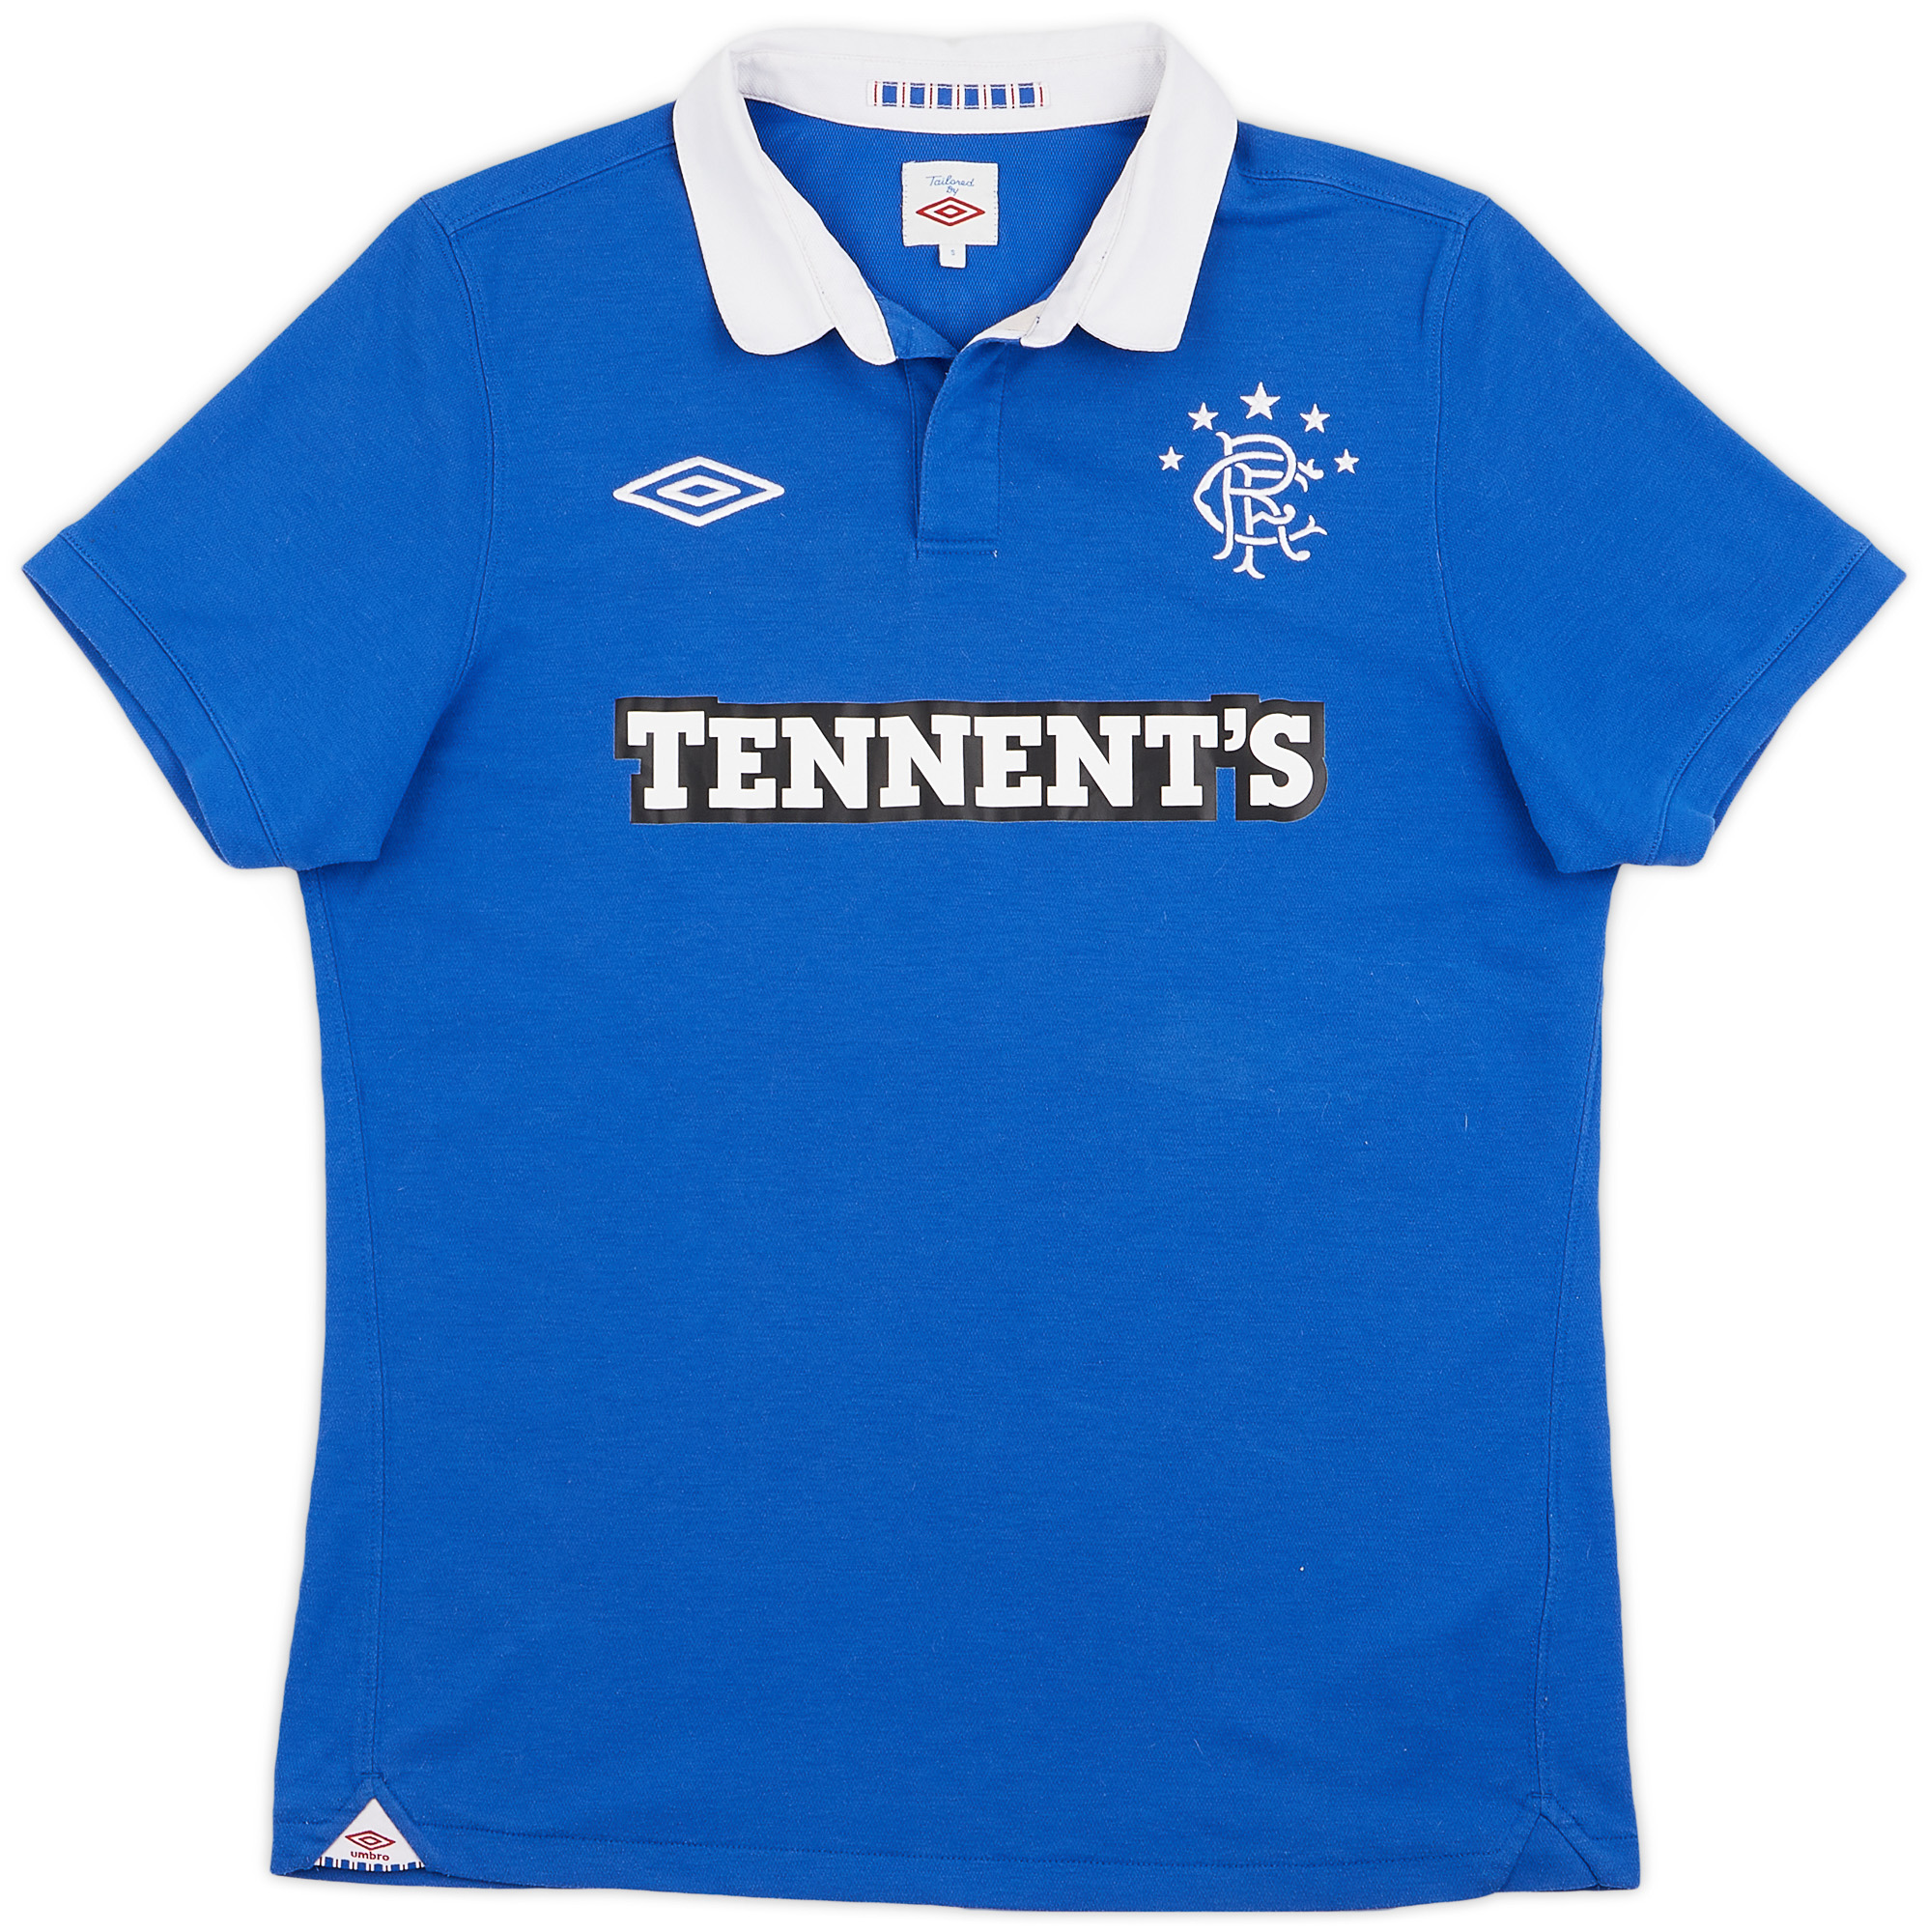 2010-11 Rangers Home Shirt - 8/10 - ()